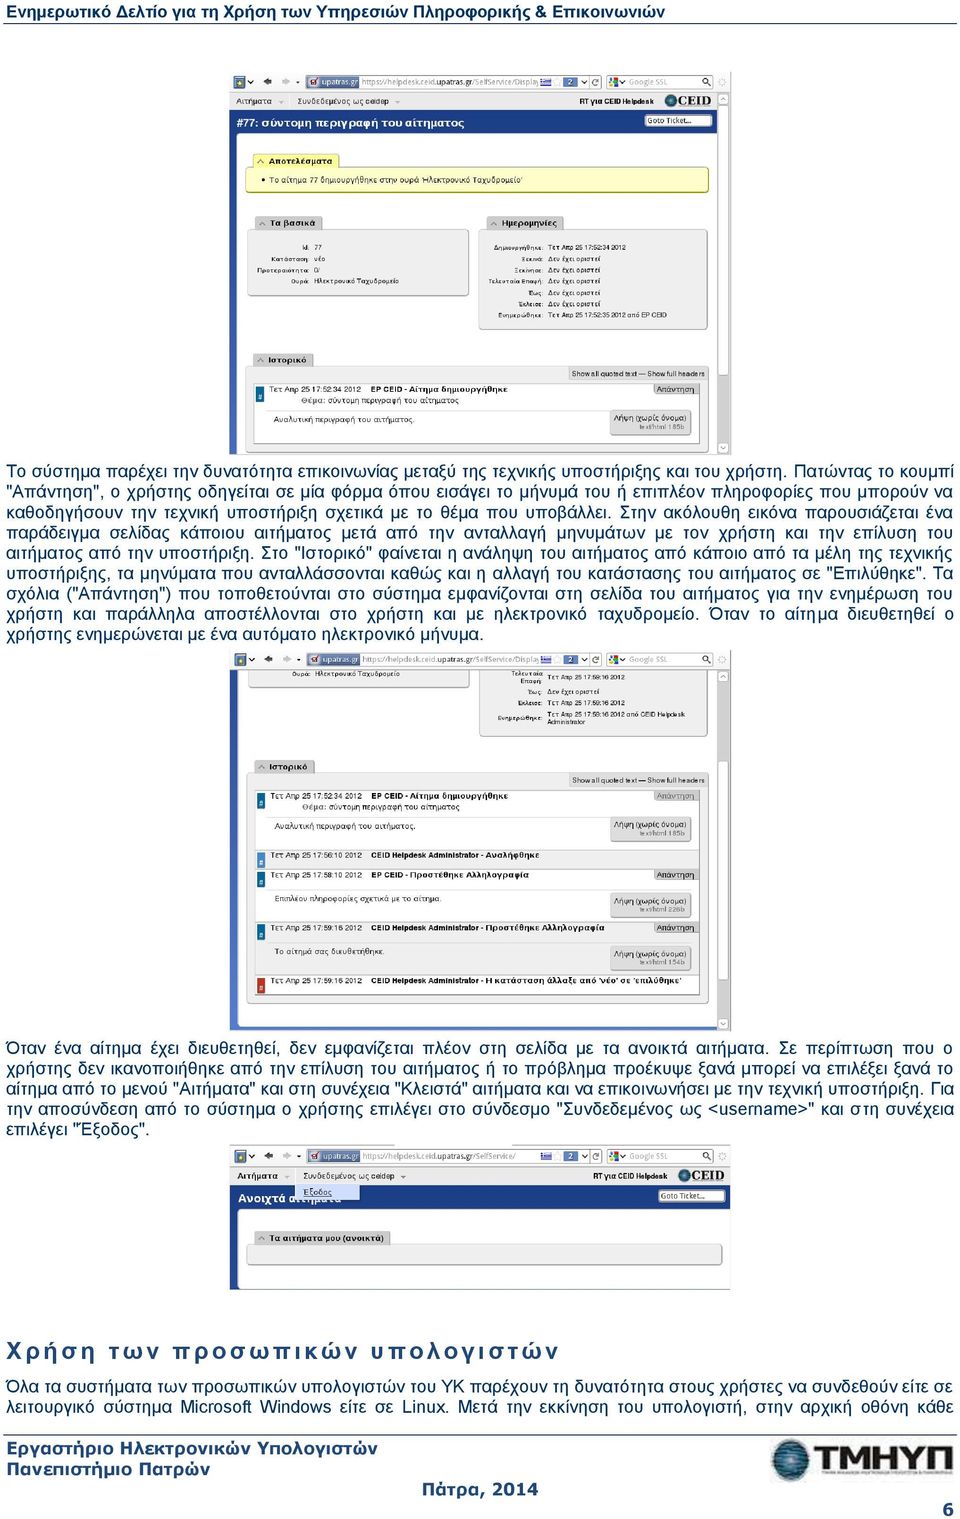 Στην ακόλουθη εικόνα παρουσιάζεται ένα παράδειγμα σελίδας κάποιου αιτήματος μετά από την ανταλλαγή μηνυμάτων με τον χρήστη και την επίλυση του αιτήματος από την υποστήριξη.